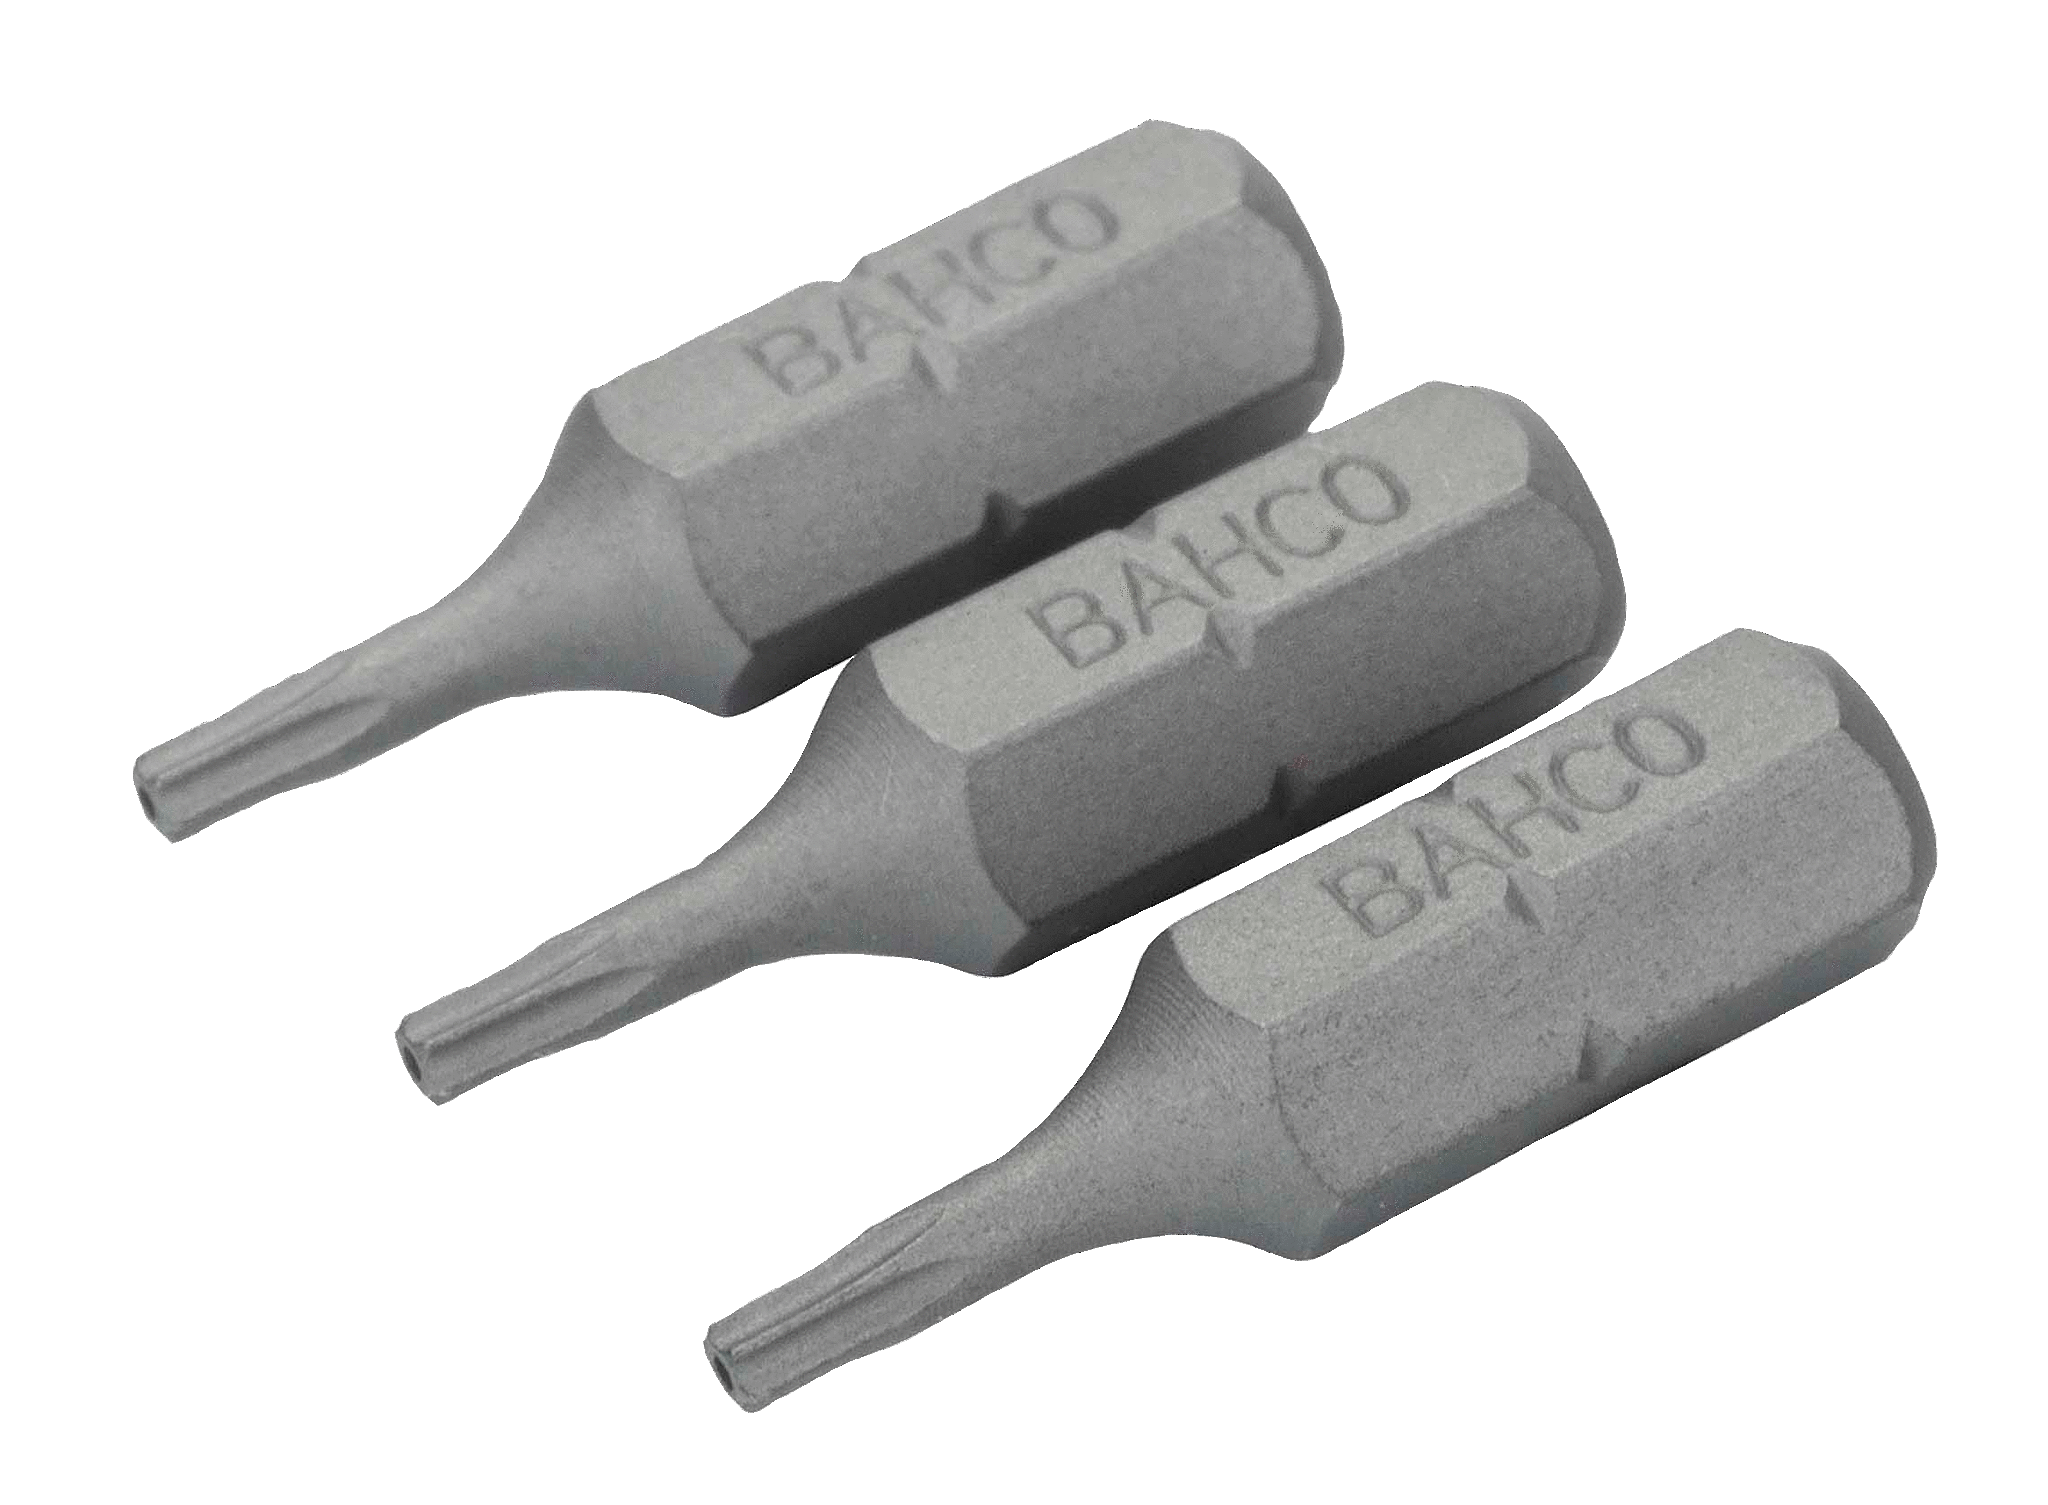 картинка Стандартные биты для отверток Torx® TR, 25 мм BAHCO 59S/TR25 от магазина "Элит-инструмент"